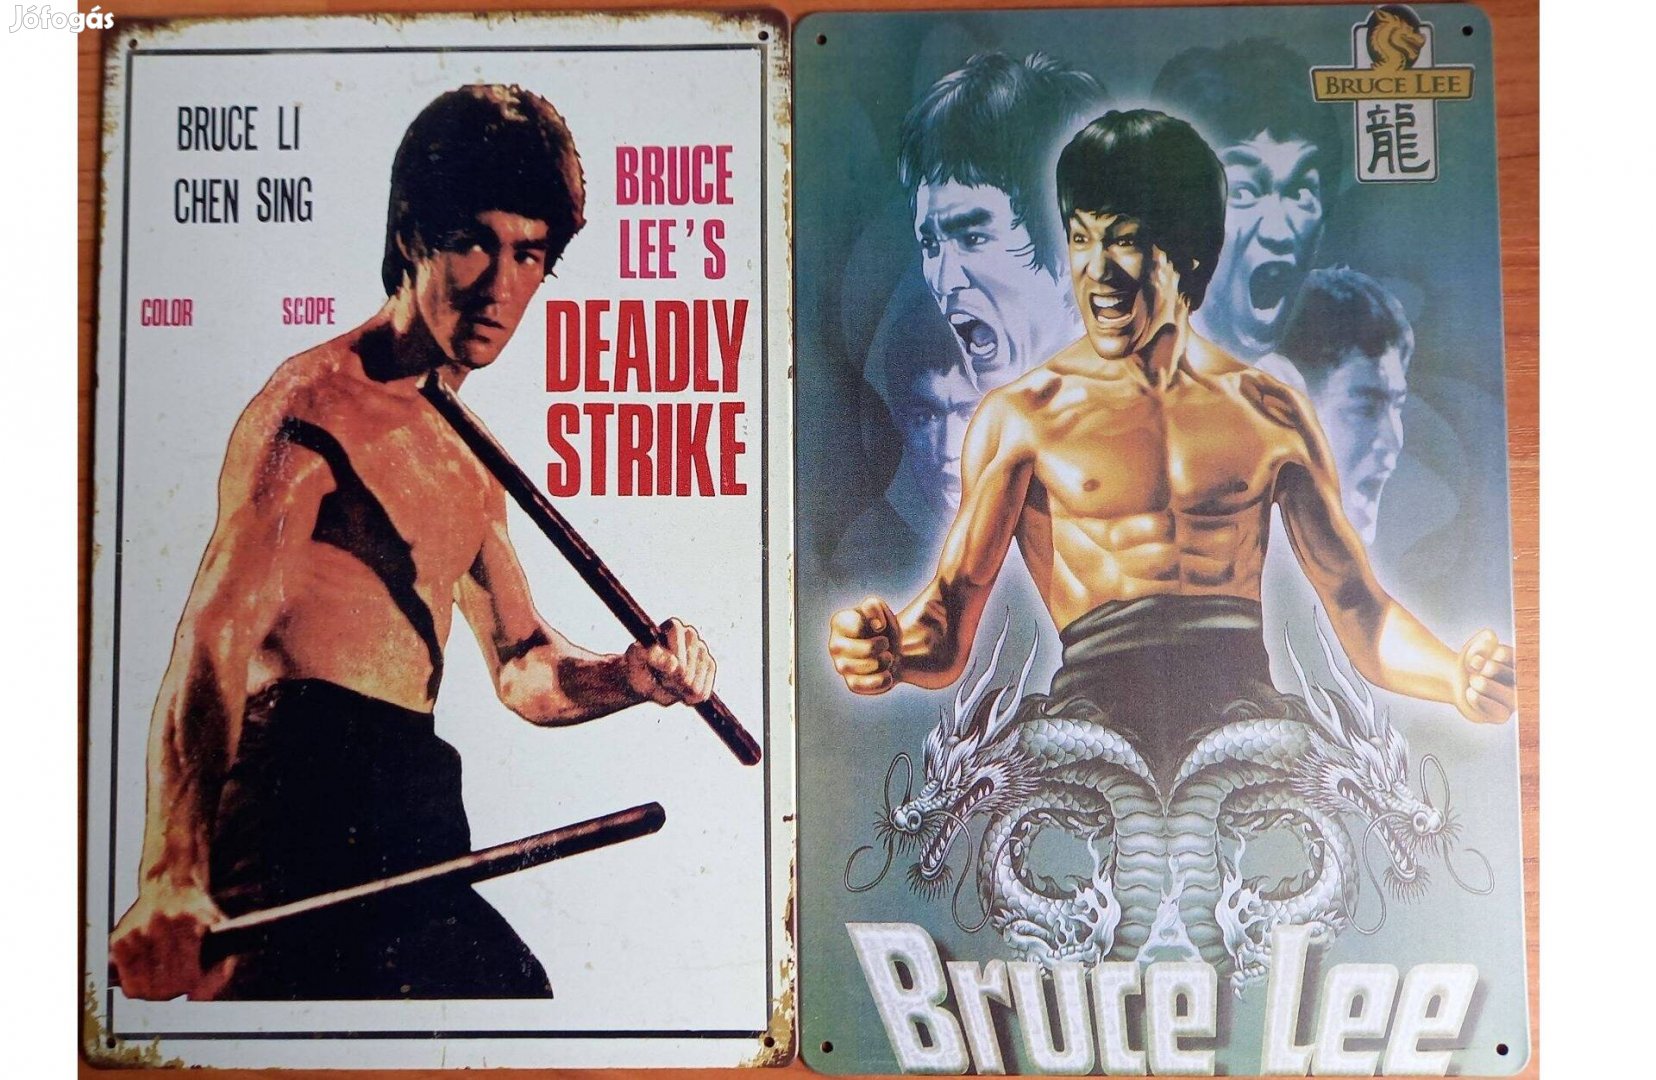 Dekorációs fém tábla (Bruce Lee & Bruce Lee)